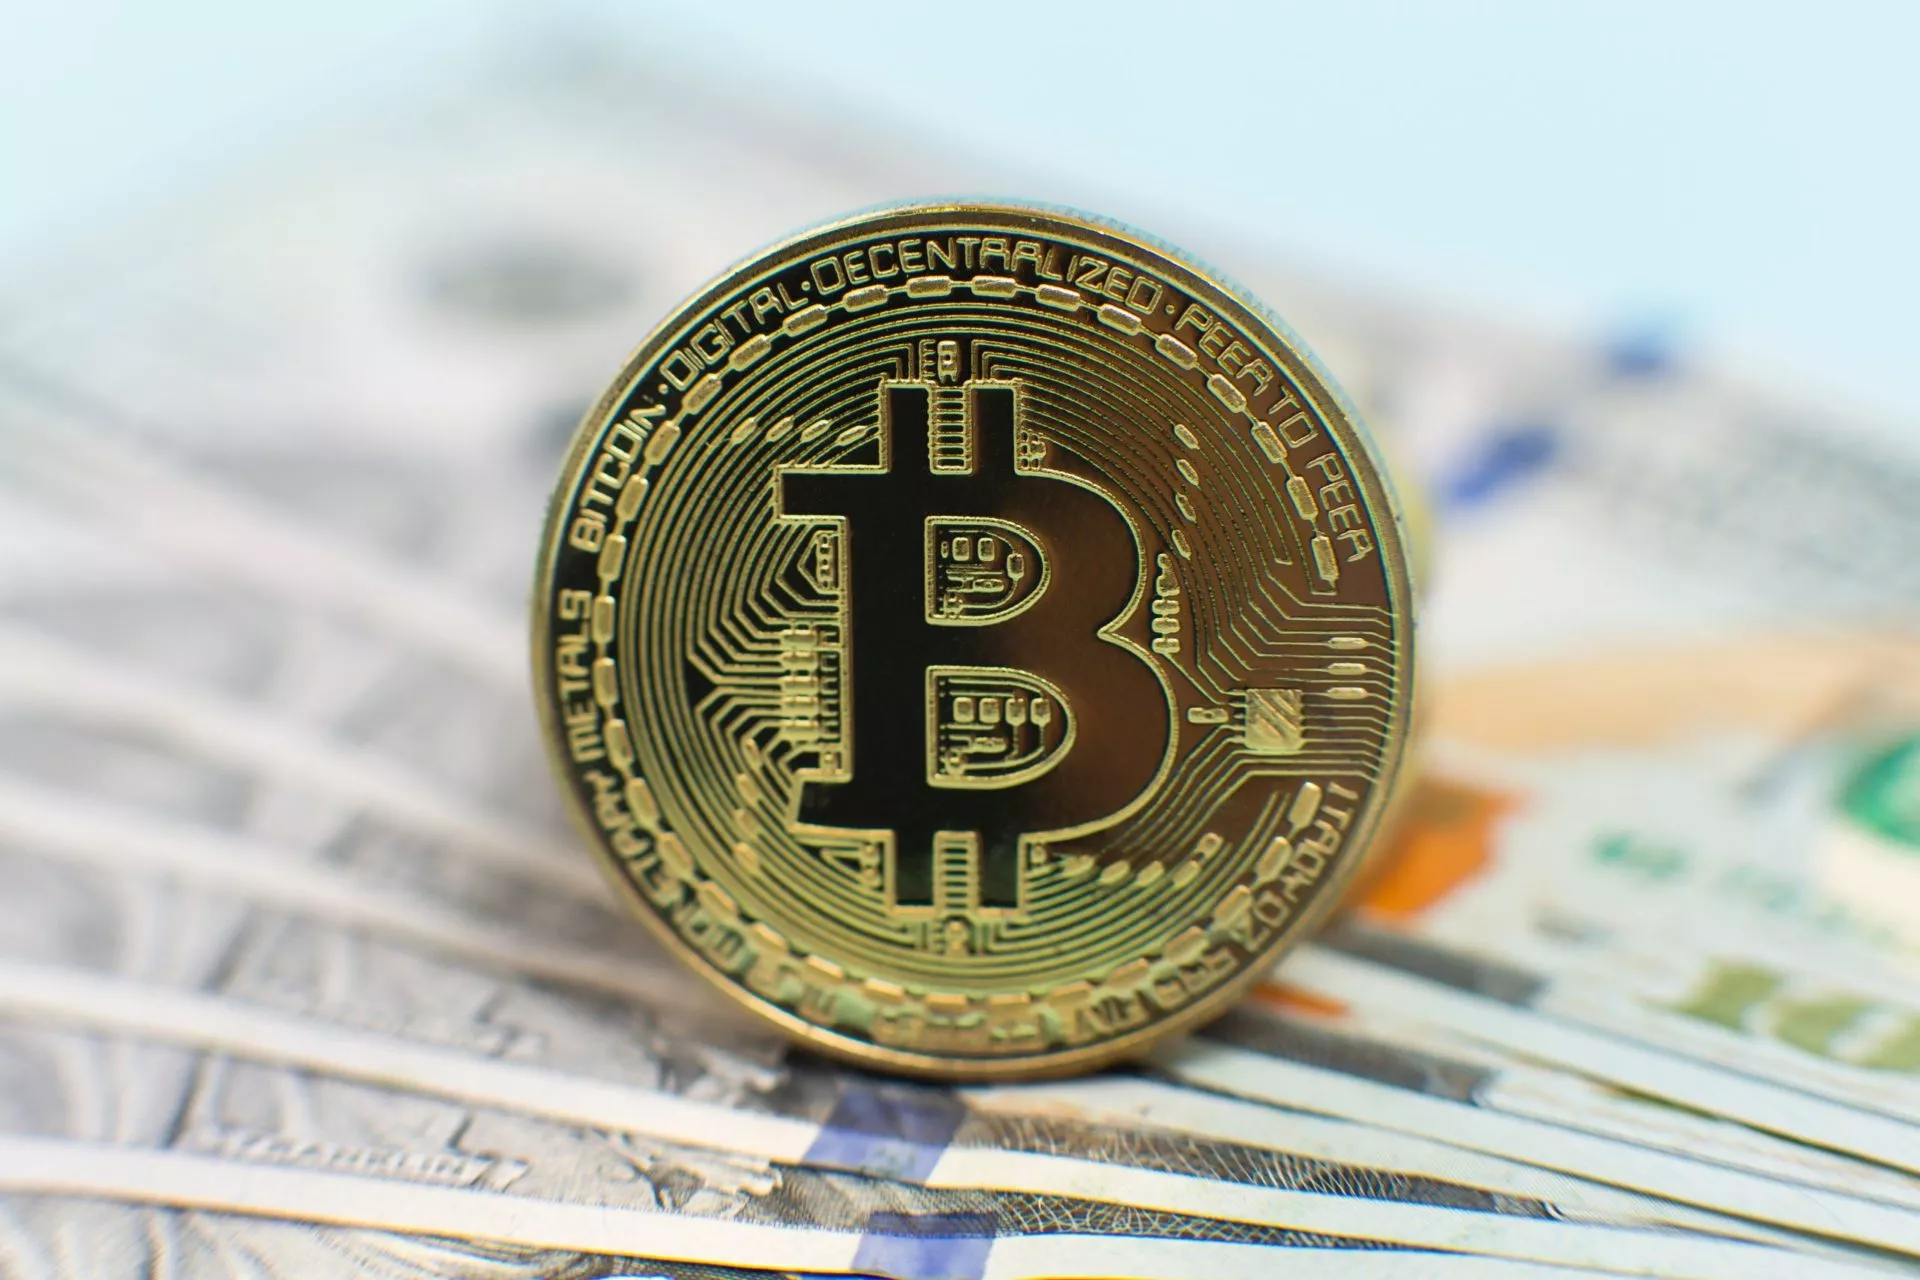 Klanten Rakuten kunnen Bitcoin gebruiken voor dagelijkse transacties